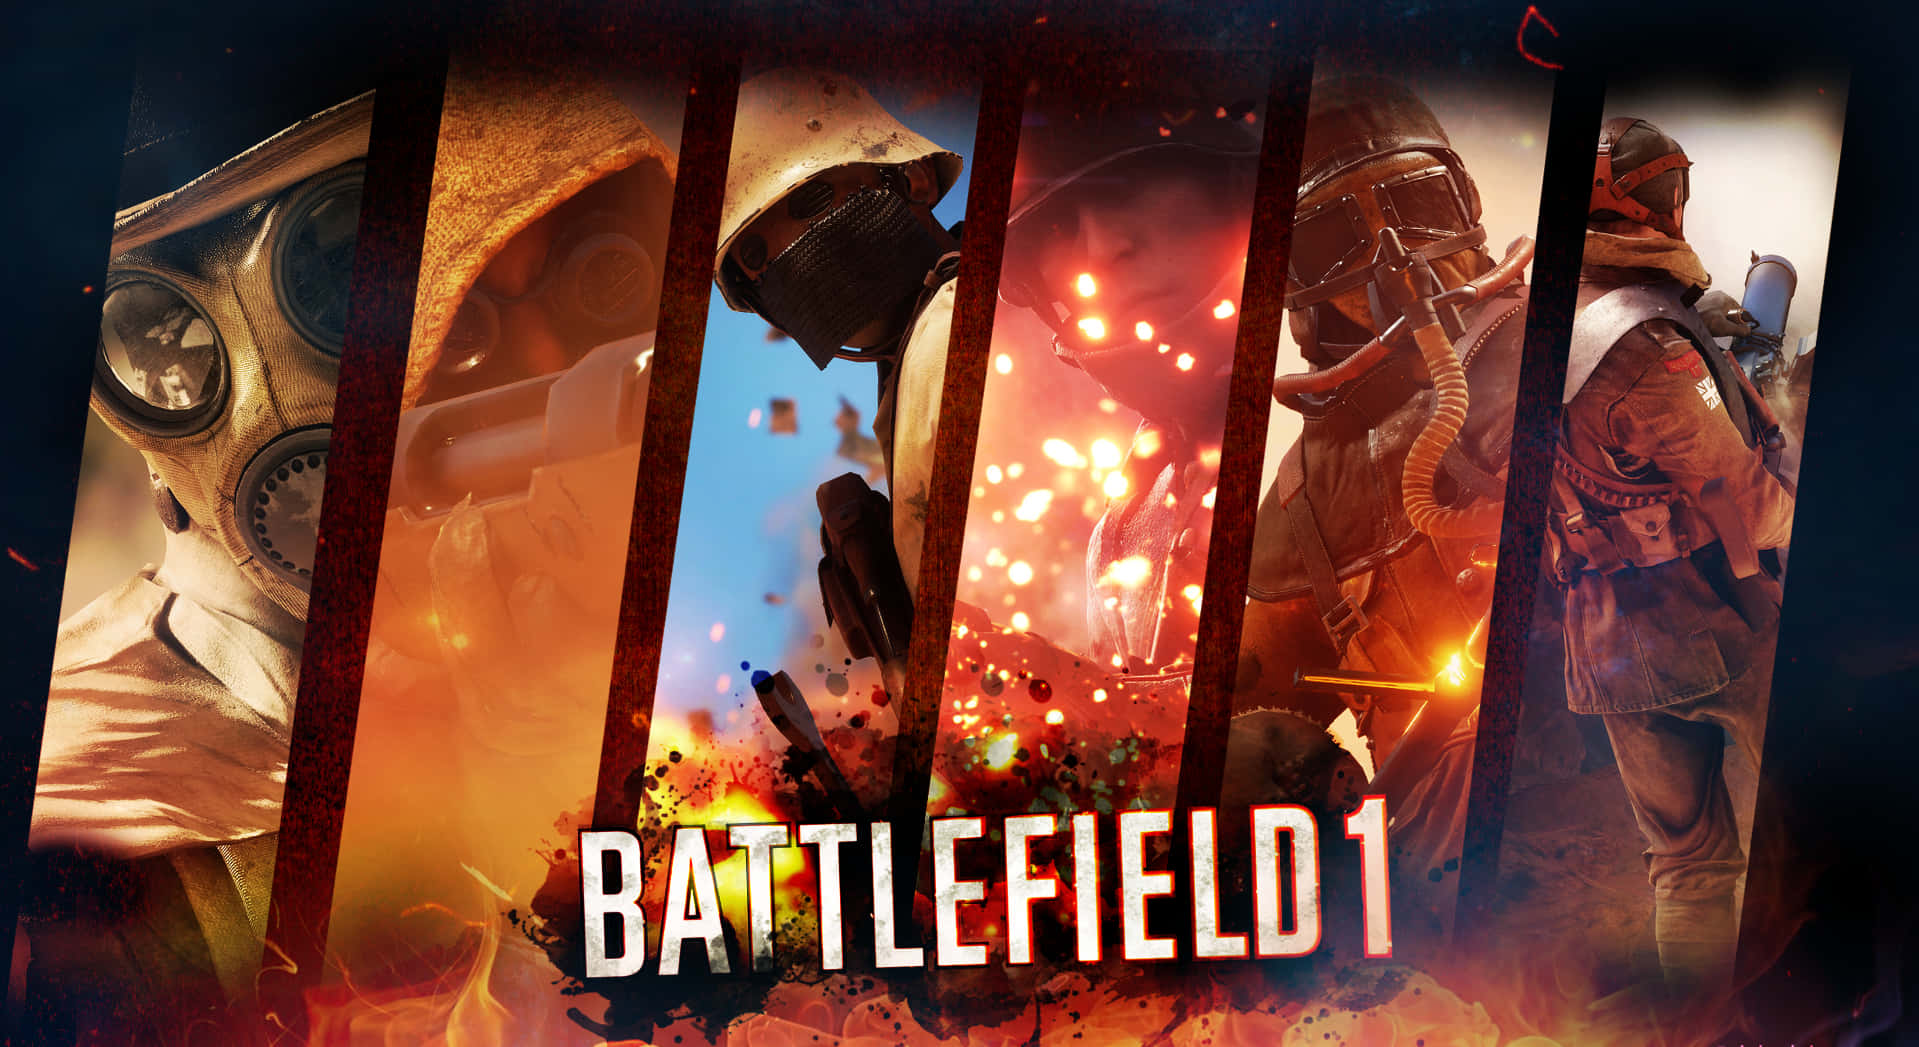 Best Battlefield 1 Background